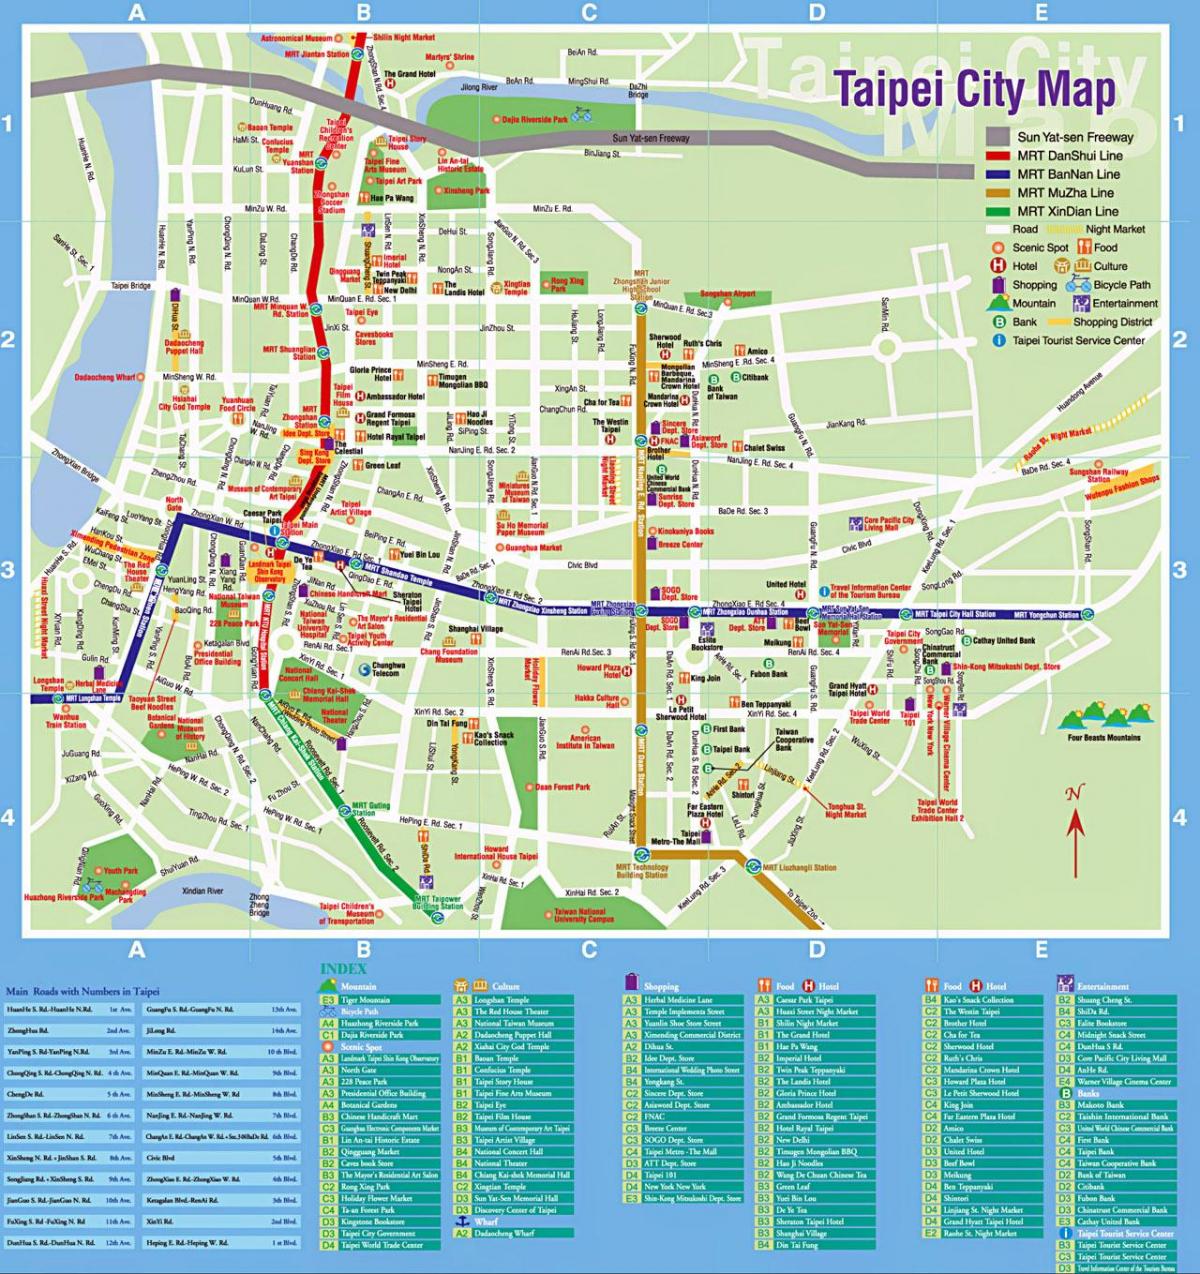 नक्शे के ताइपे शहर के पर्यटक